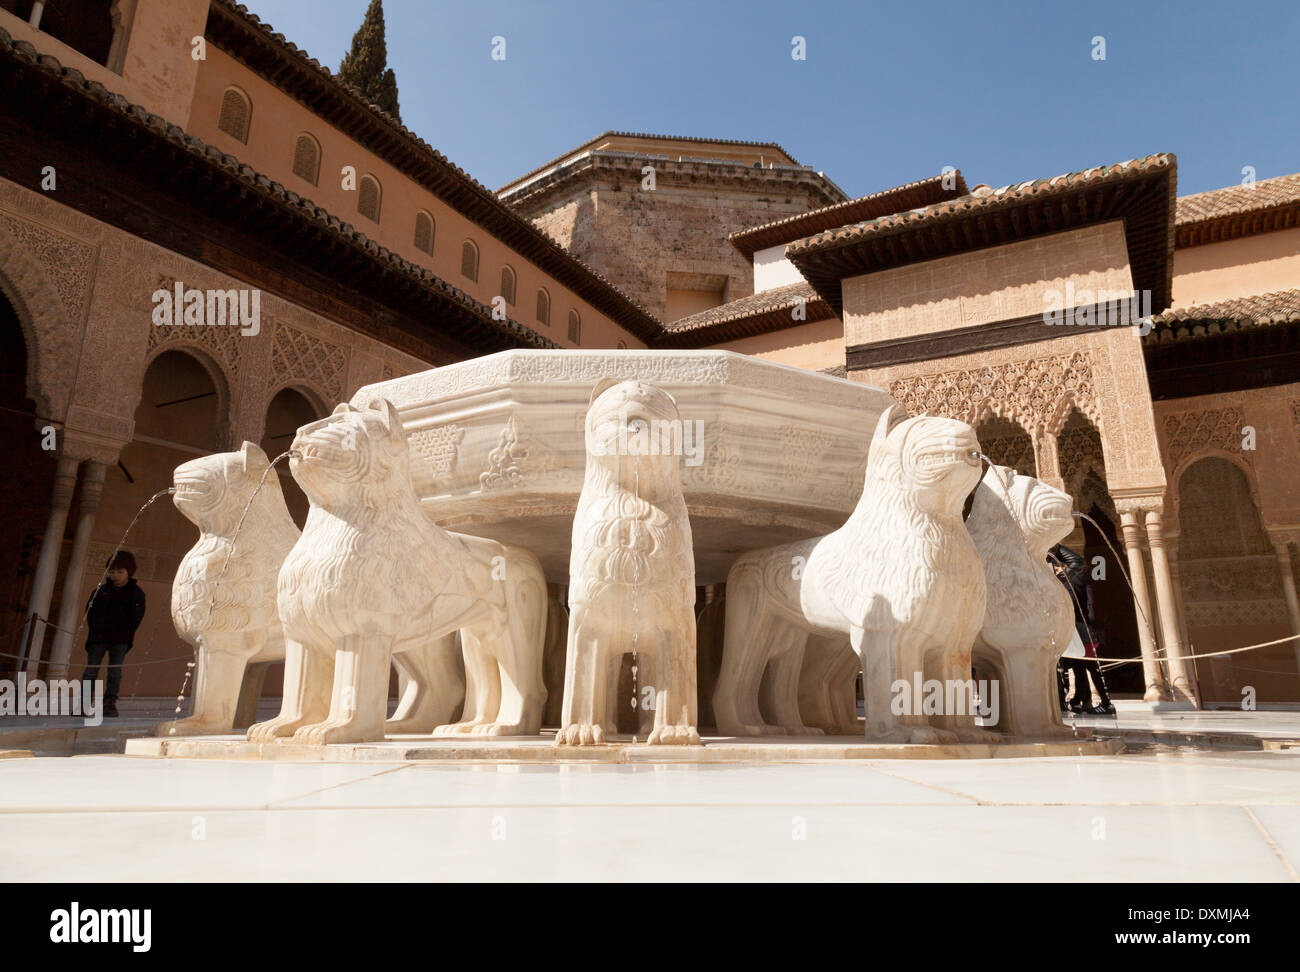 Le Patio de los Leones (Cour des Lions ) fontaine, Palais Nasrides, Palais de l'Alhambra de Grenade, Andalousie Espagne Banque D'Images